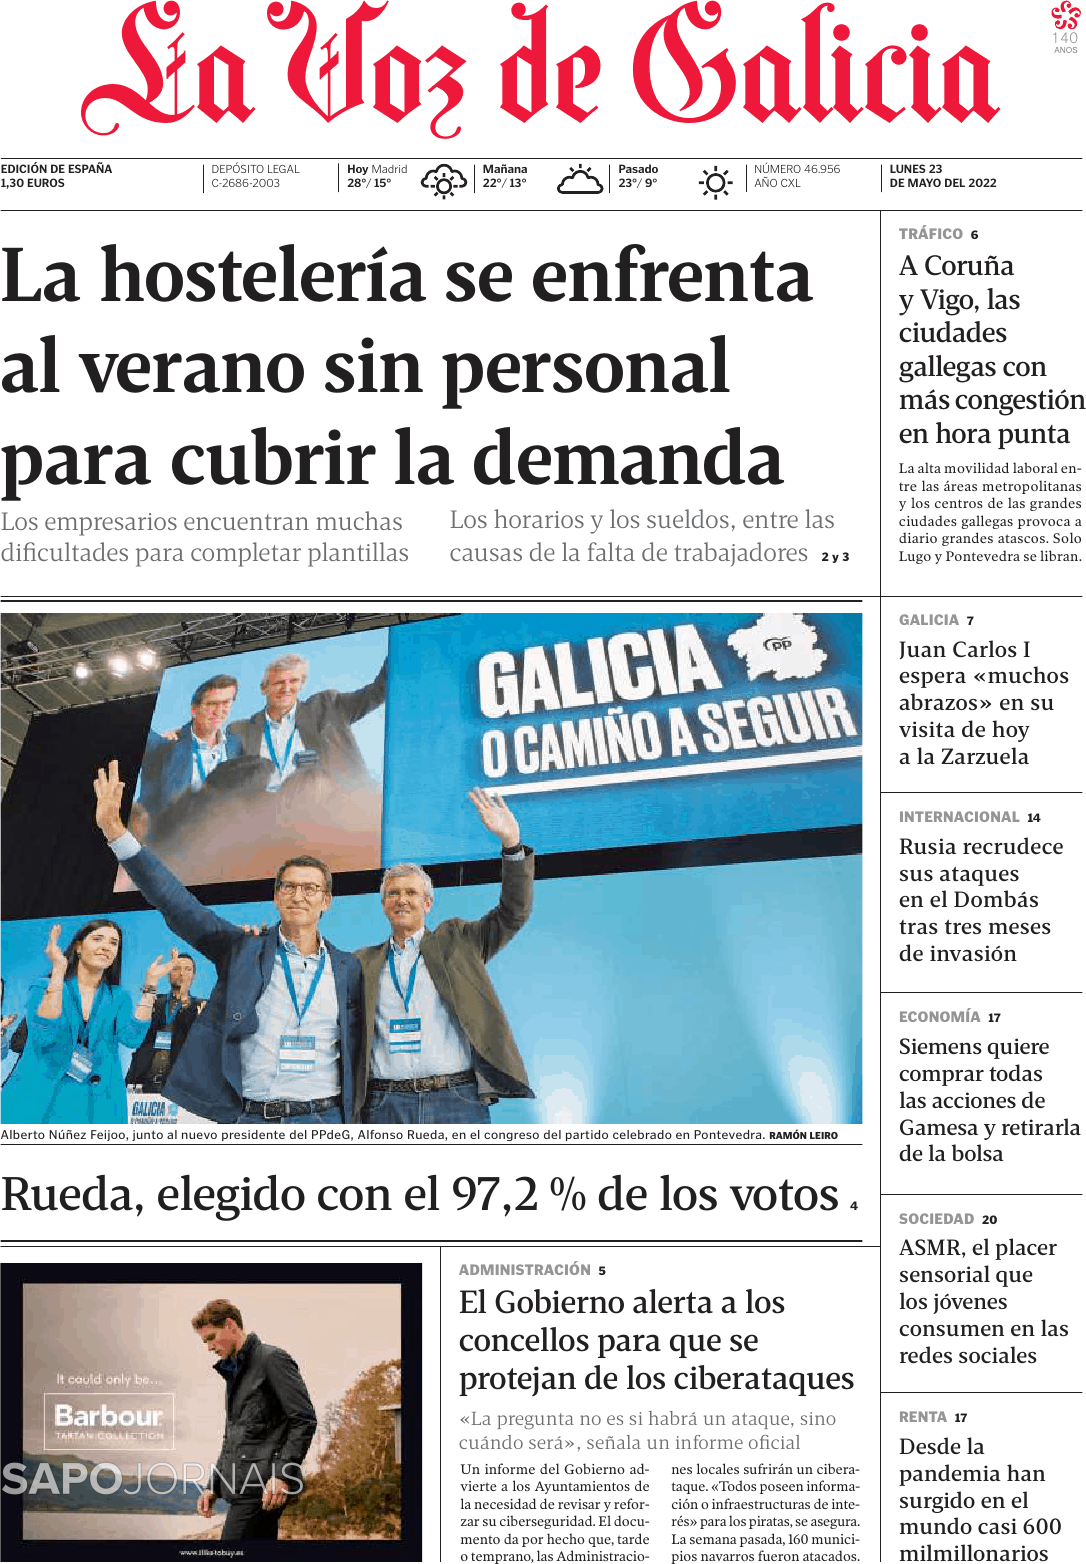 La Voz de Galicia